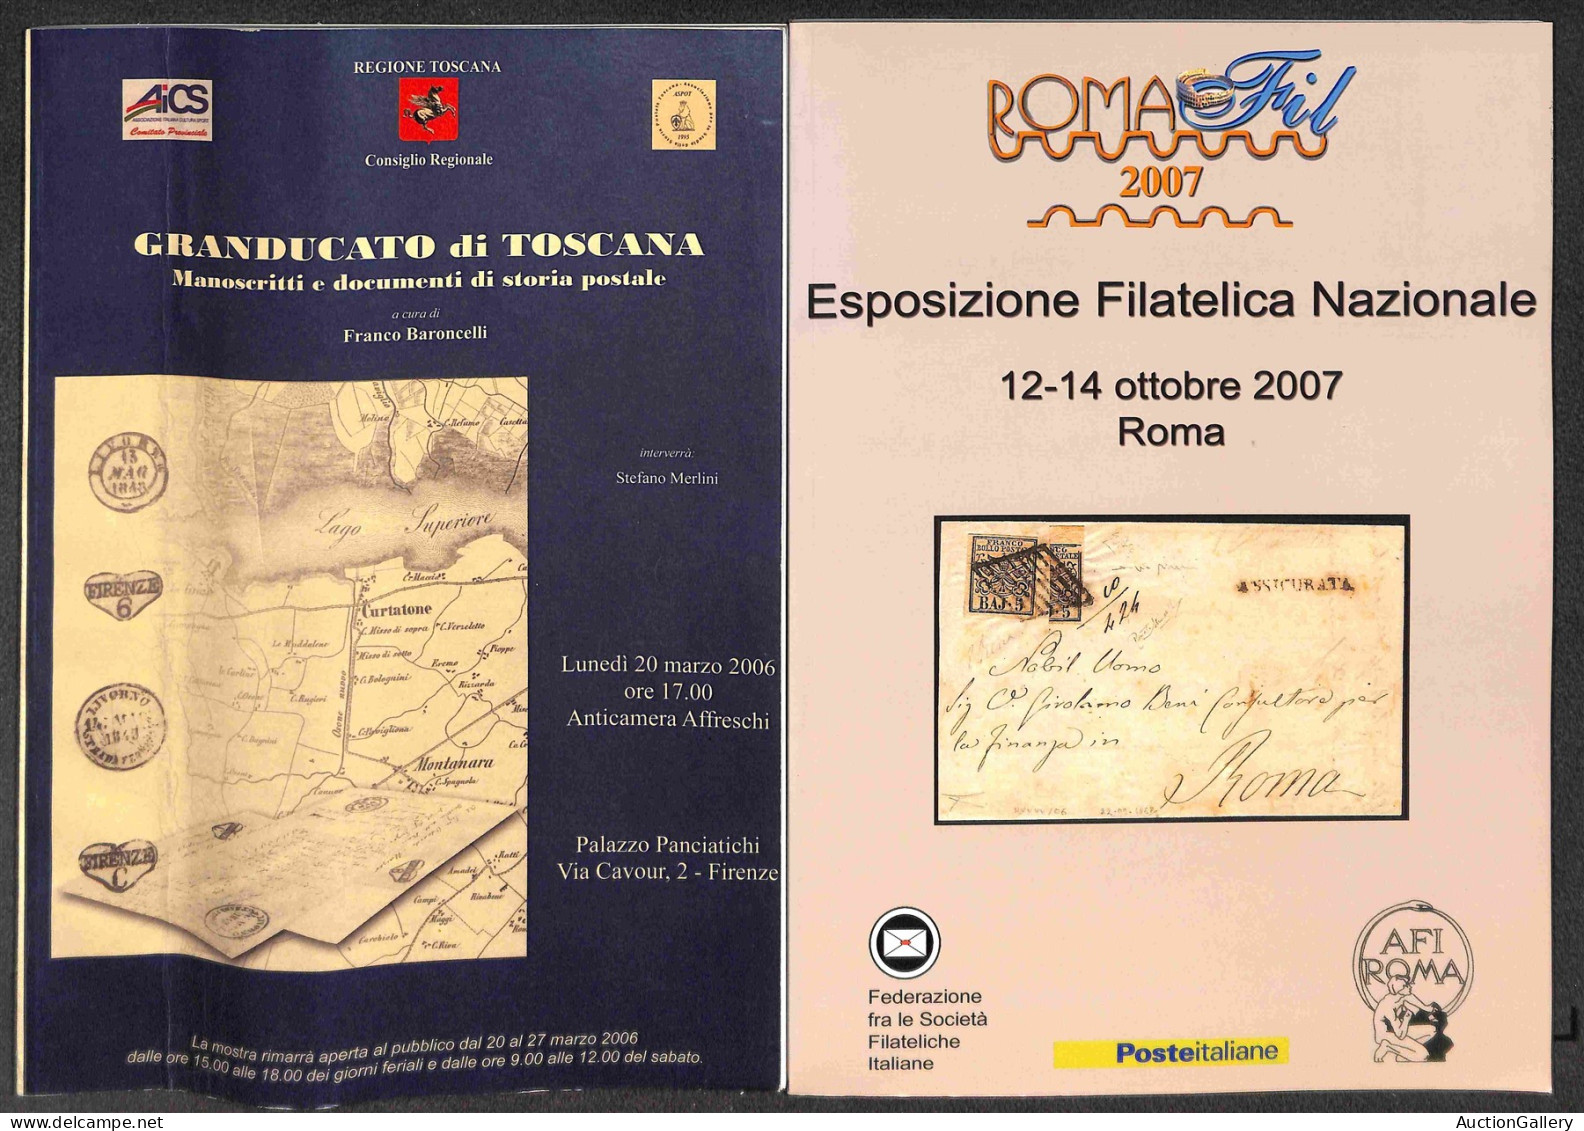 Biblioteca Filatelica - Italia - Raccolta di testi (fotocopiati) e cataloghi con diverse interessanti presenze relative 